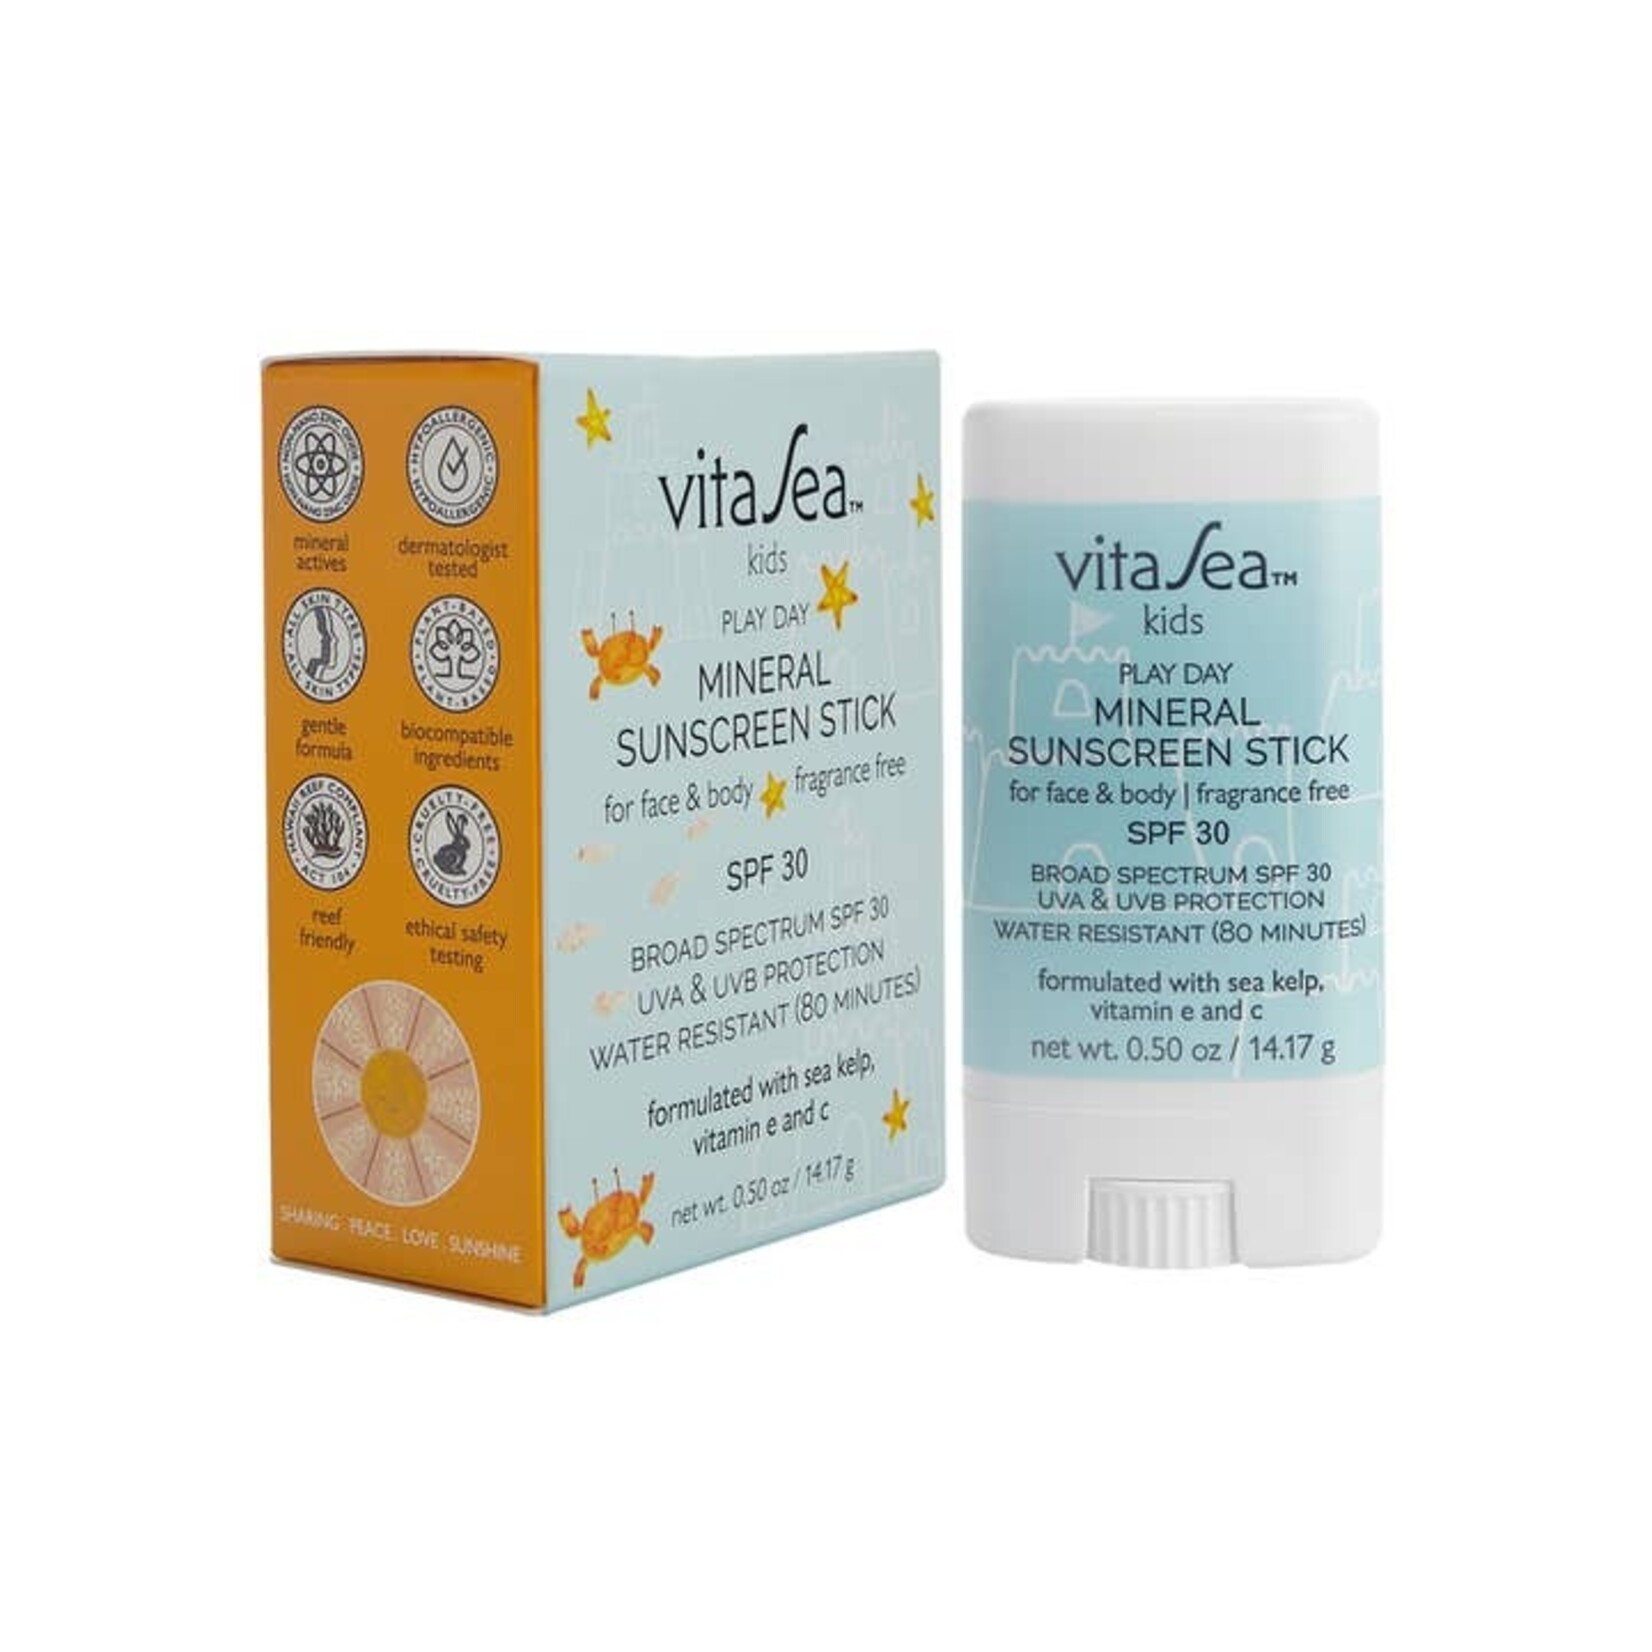 VitaSea Sun Care Kids Play Day Mineral Sunscreen Stick, SPF 30